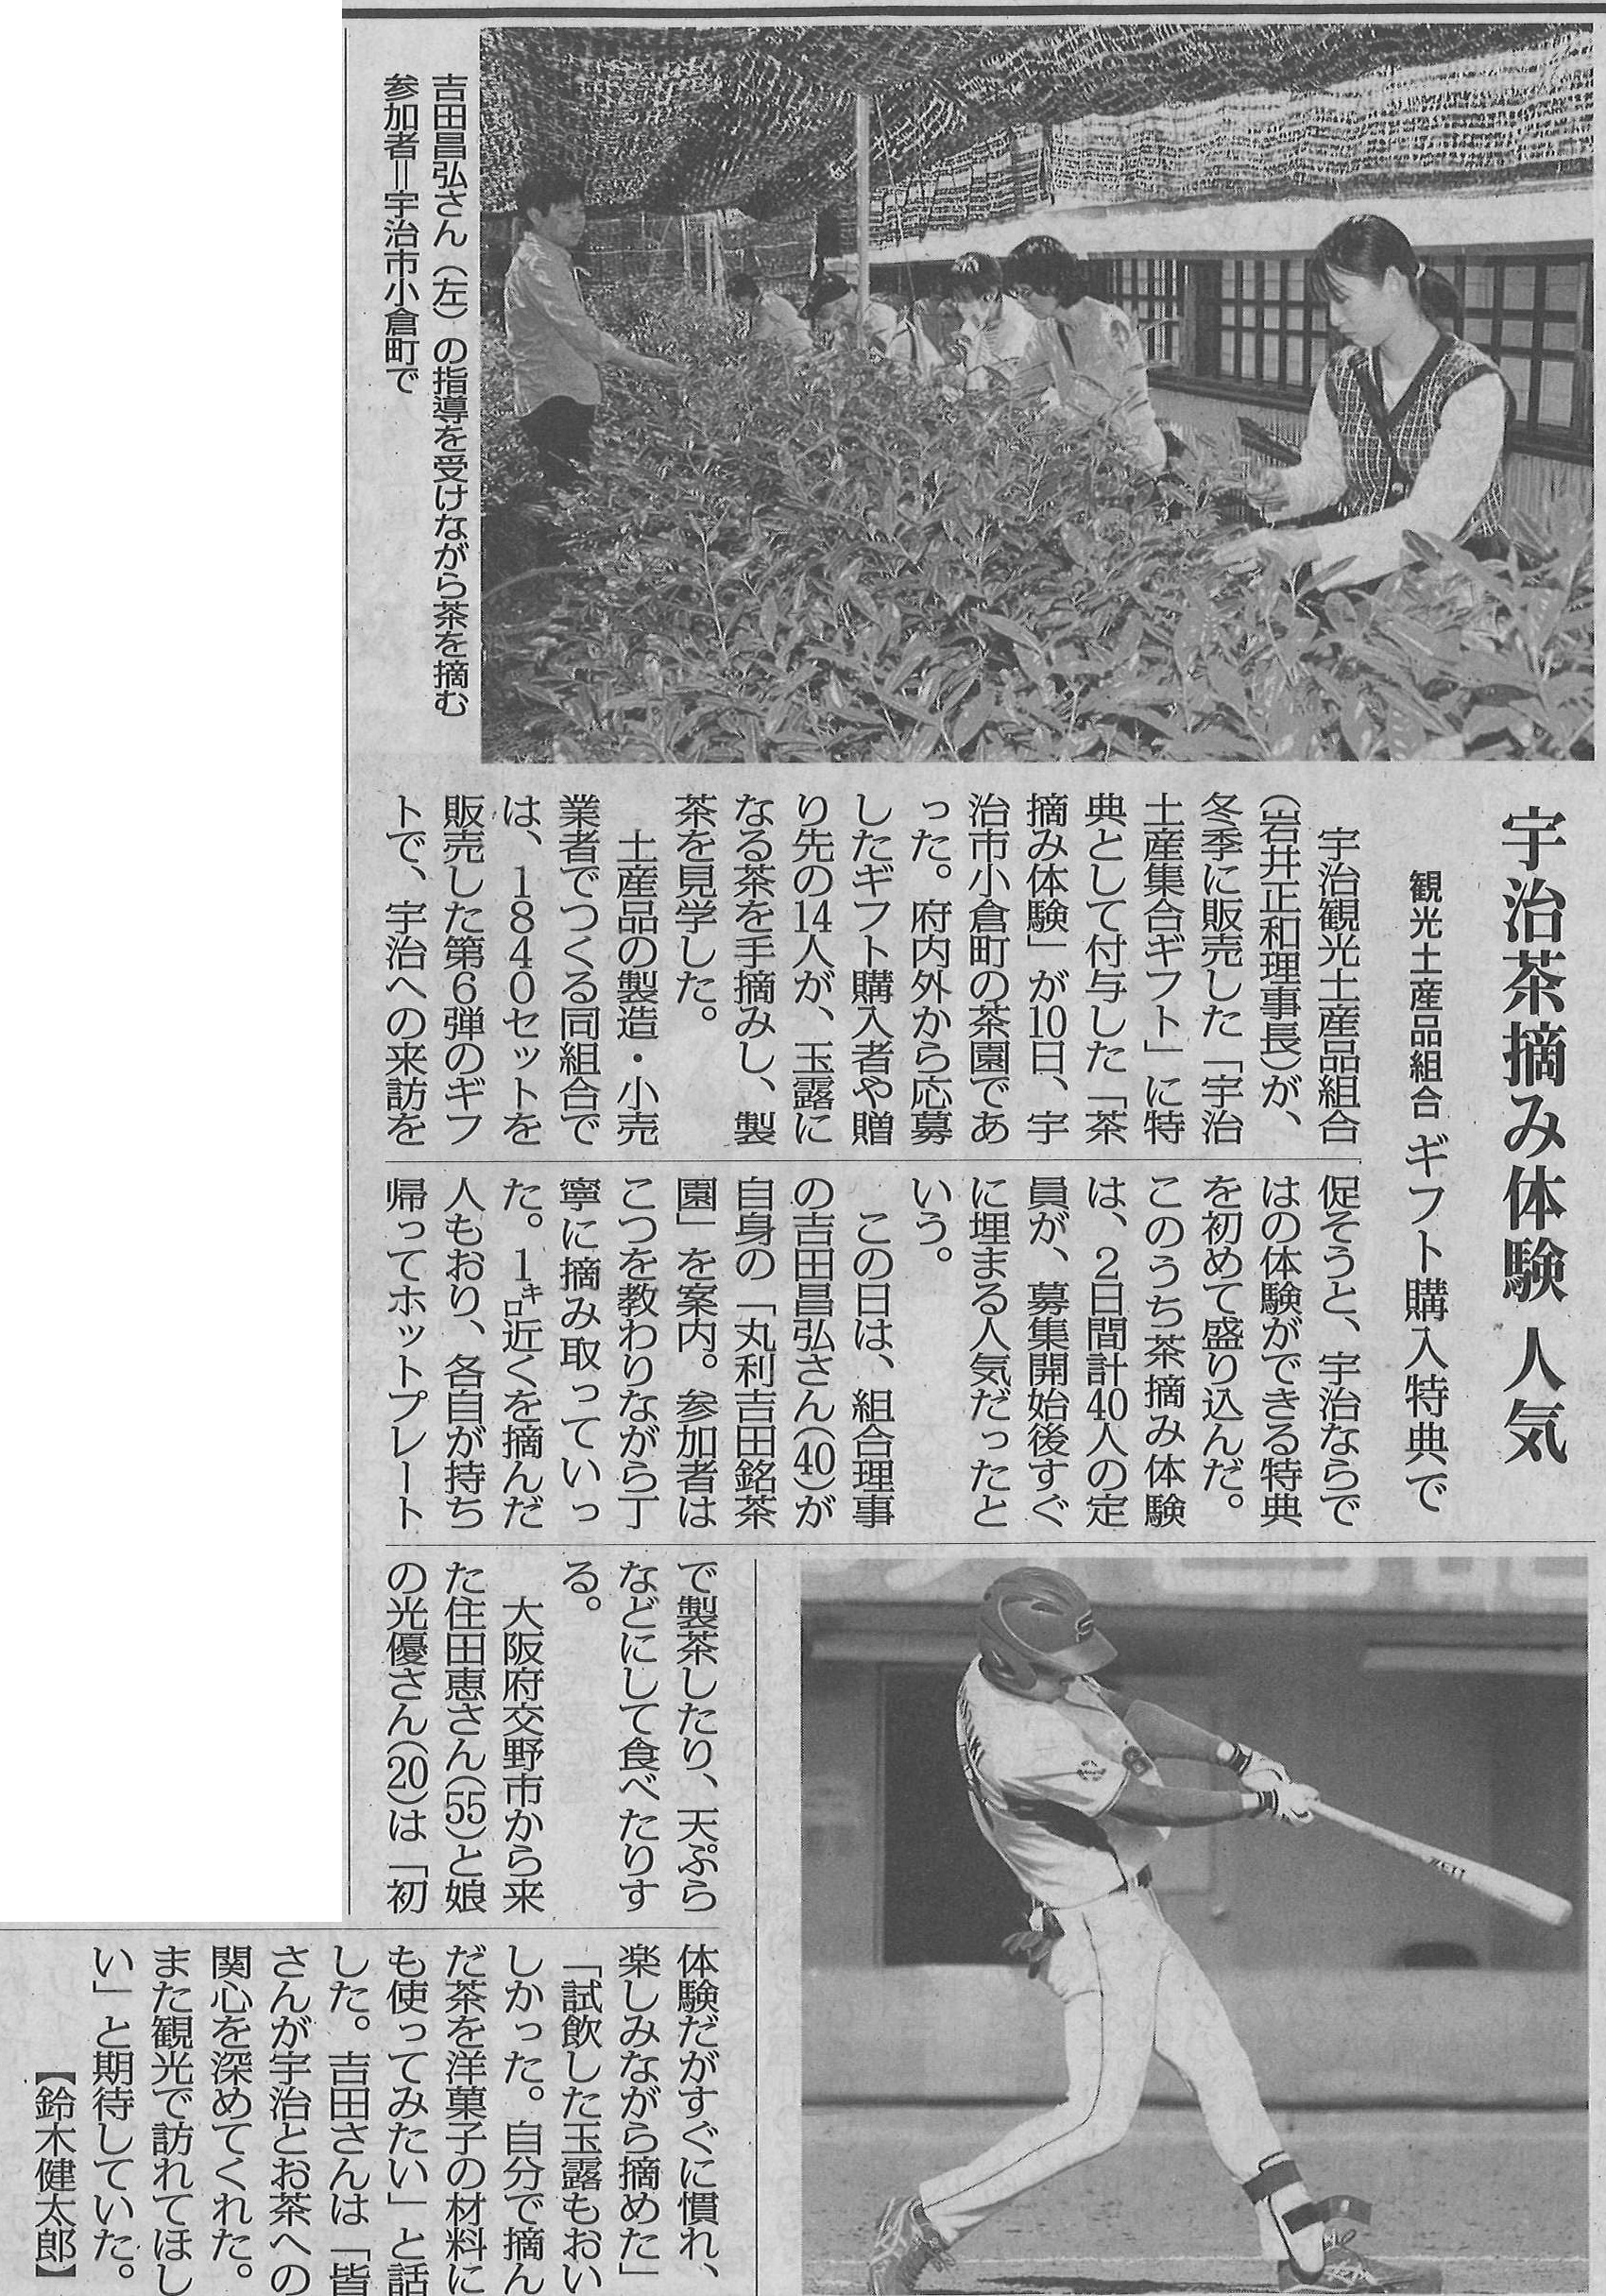 5月11日 毎日新聞にて、宇治観光土産品組合ギフト購入特典の茶摘み体験の様子が掲載